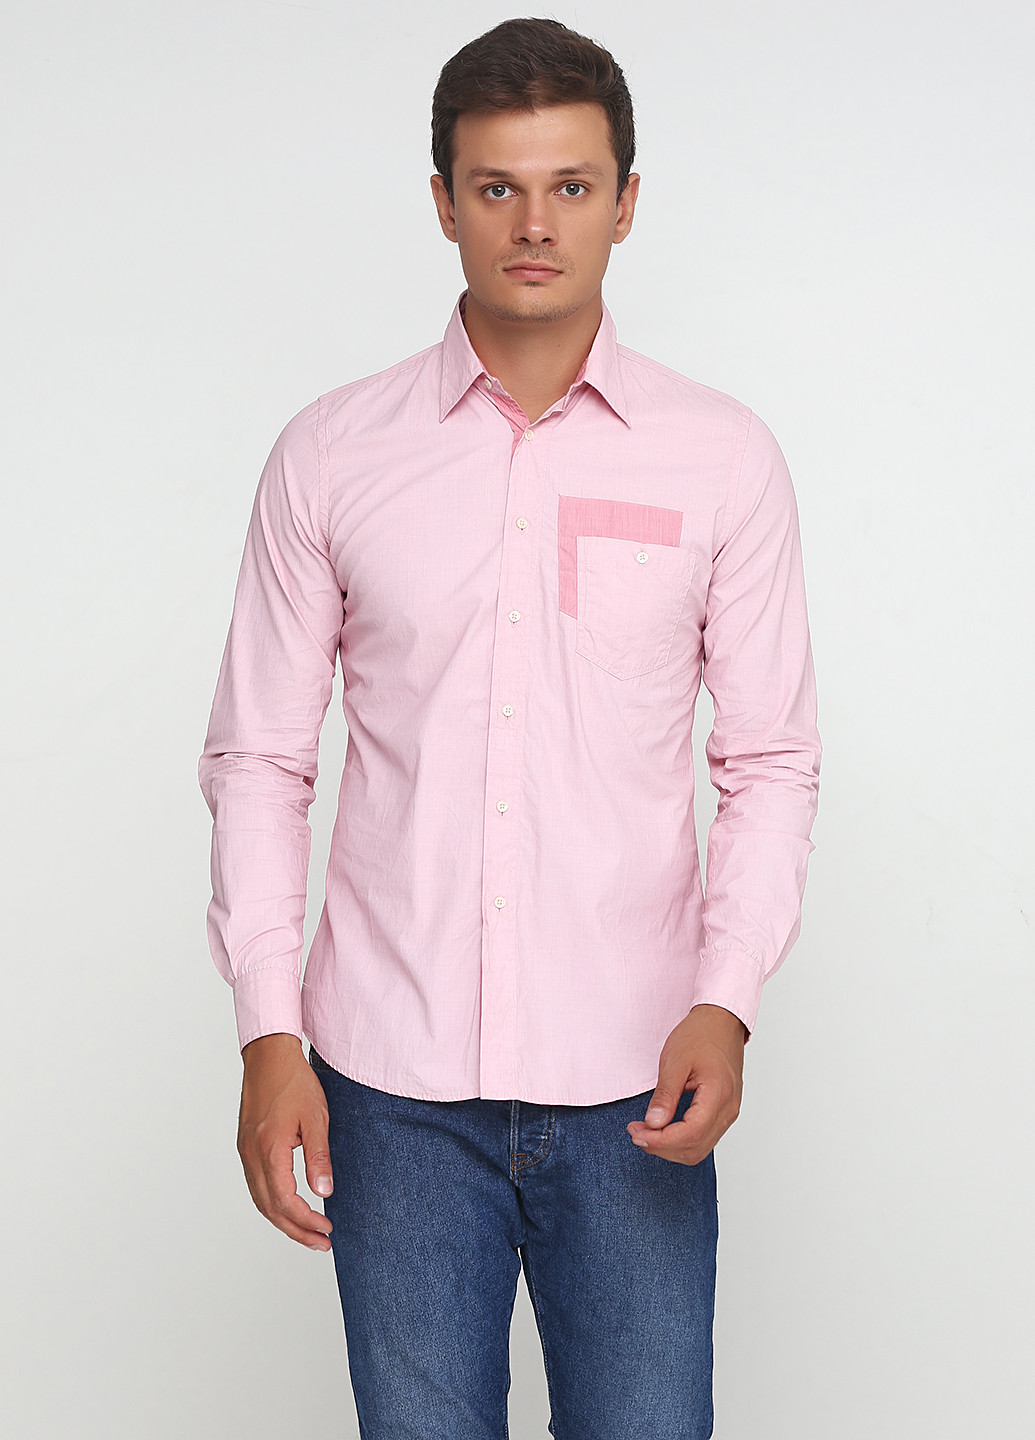 Светло-розовая кэжуал рубашка Daggs с длинным рукавом